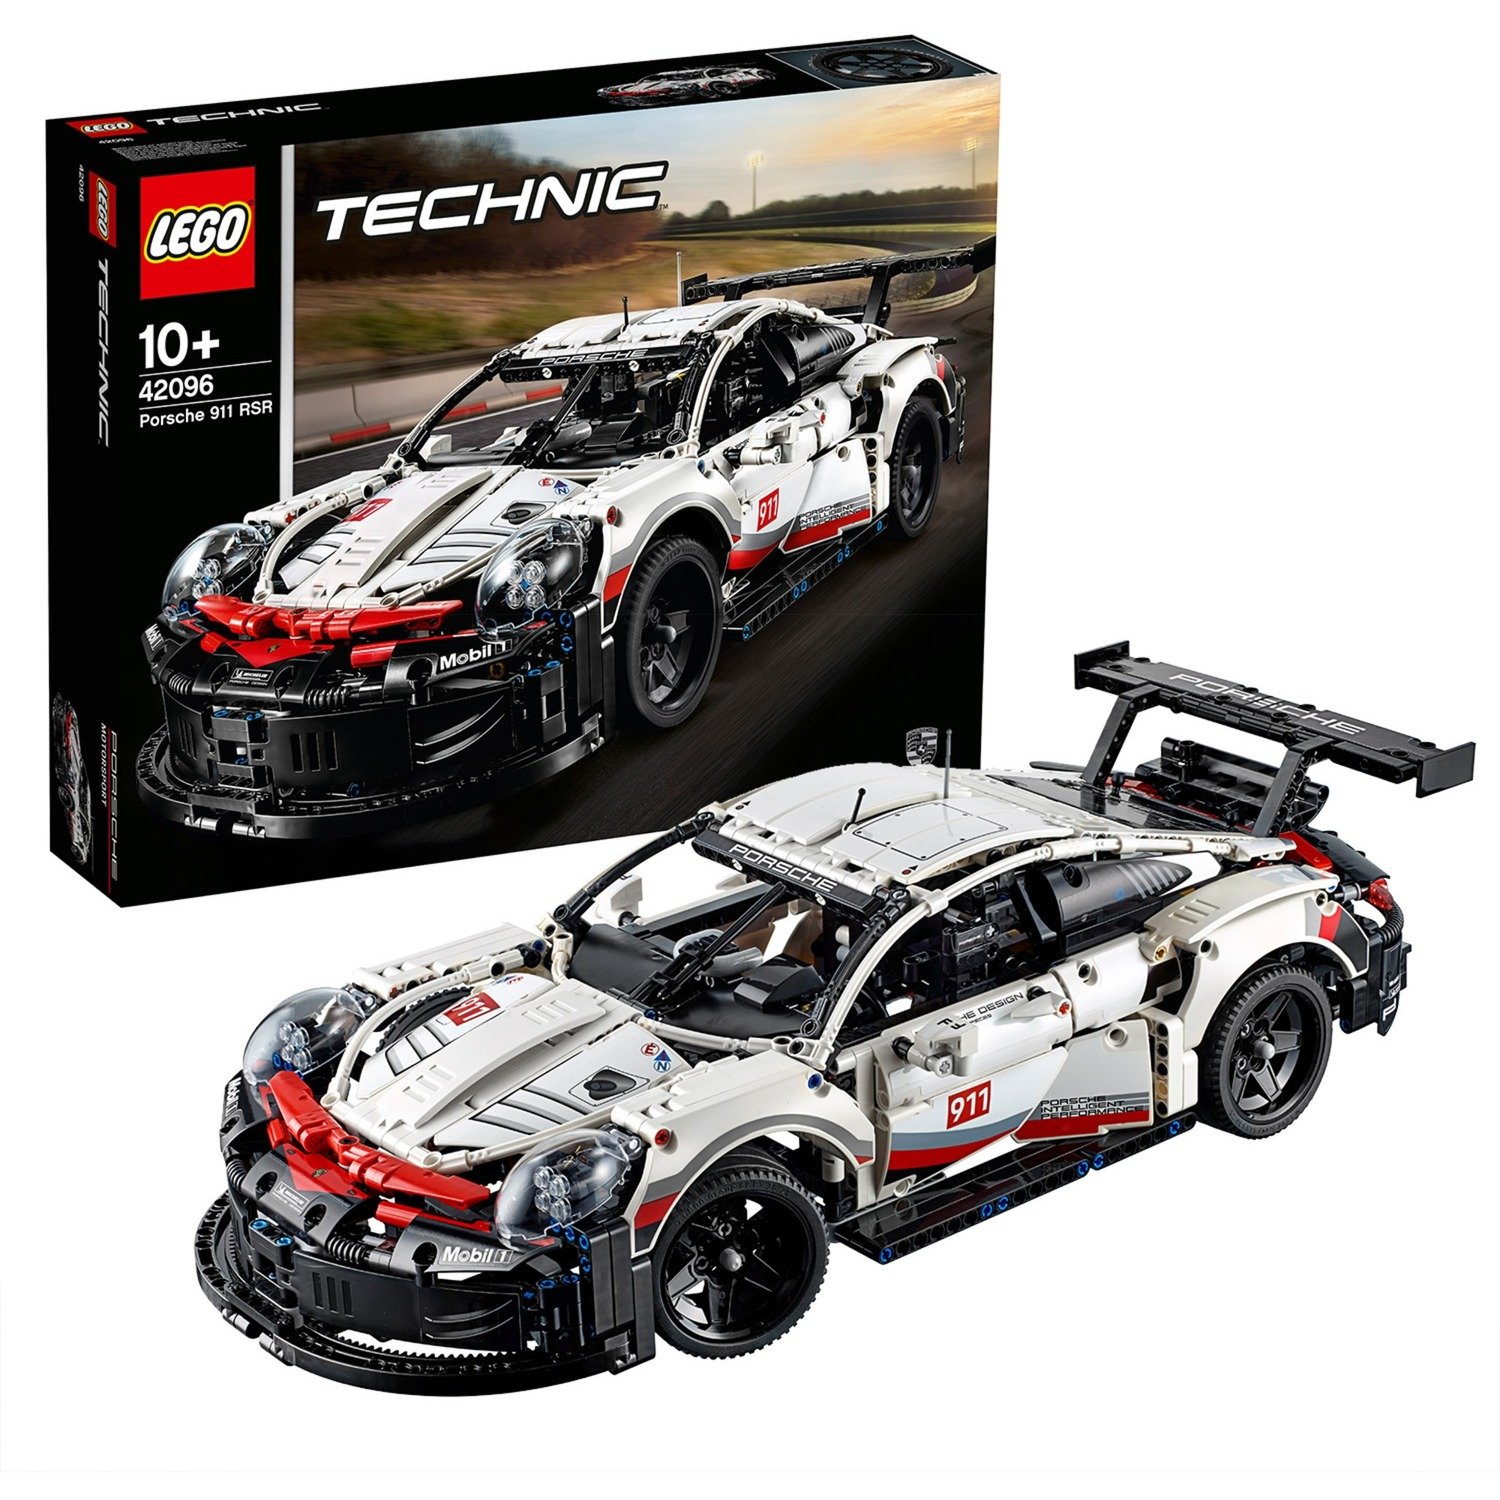 42096 Technic Porsche 911 RSR, Konstruktionsspielzeug von Lego